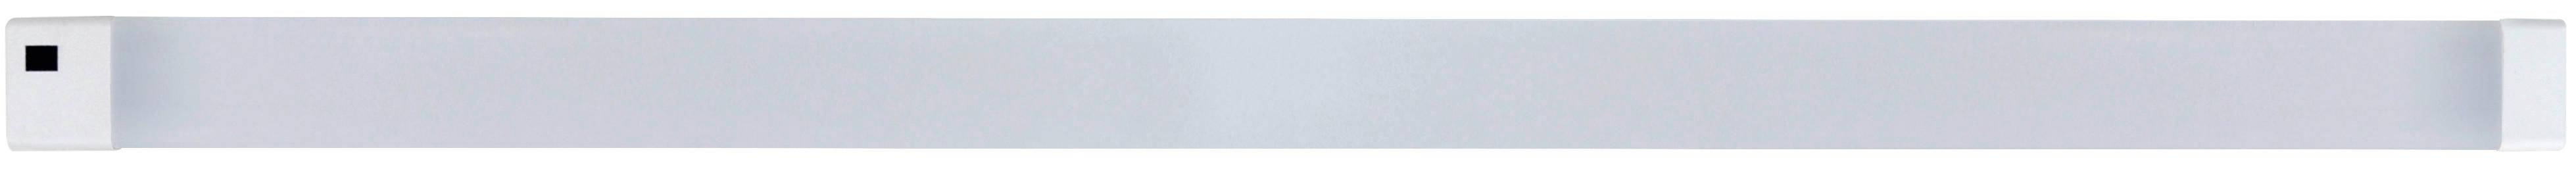 Unterbauleuchte 1x Led 10 W, aus Kunststoff Weiß, 220-240 V - Weiß, Basics, Kunststoff (60/3,2/1,4cm)